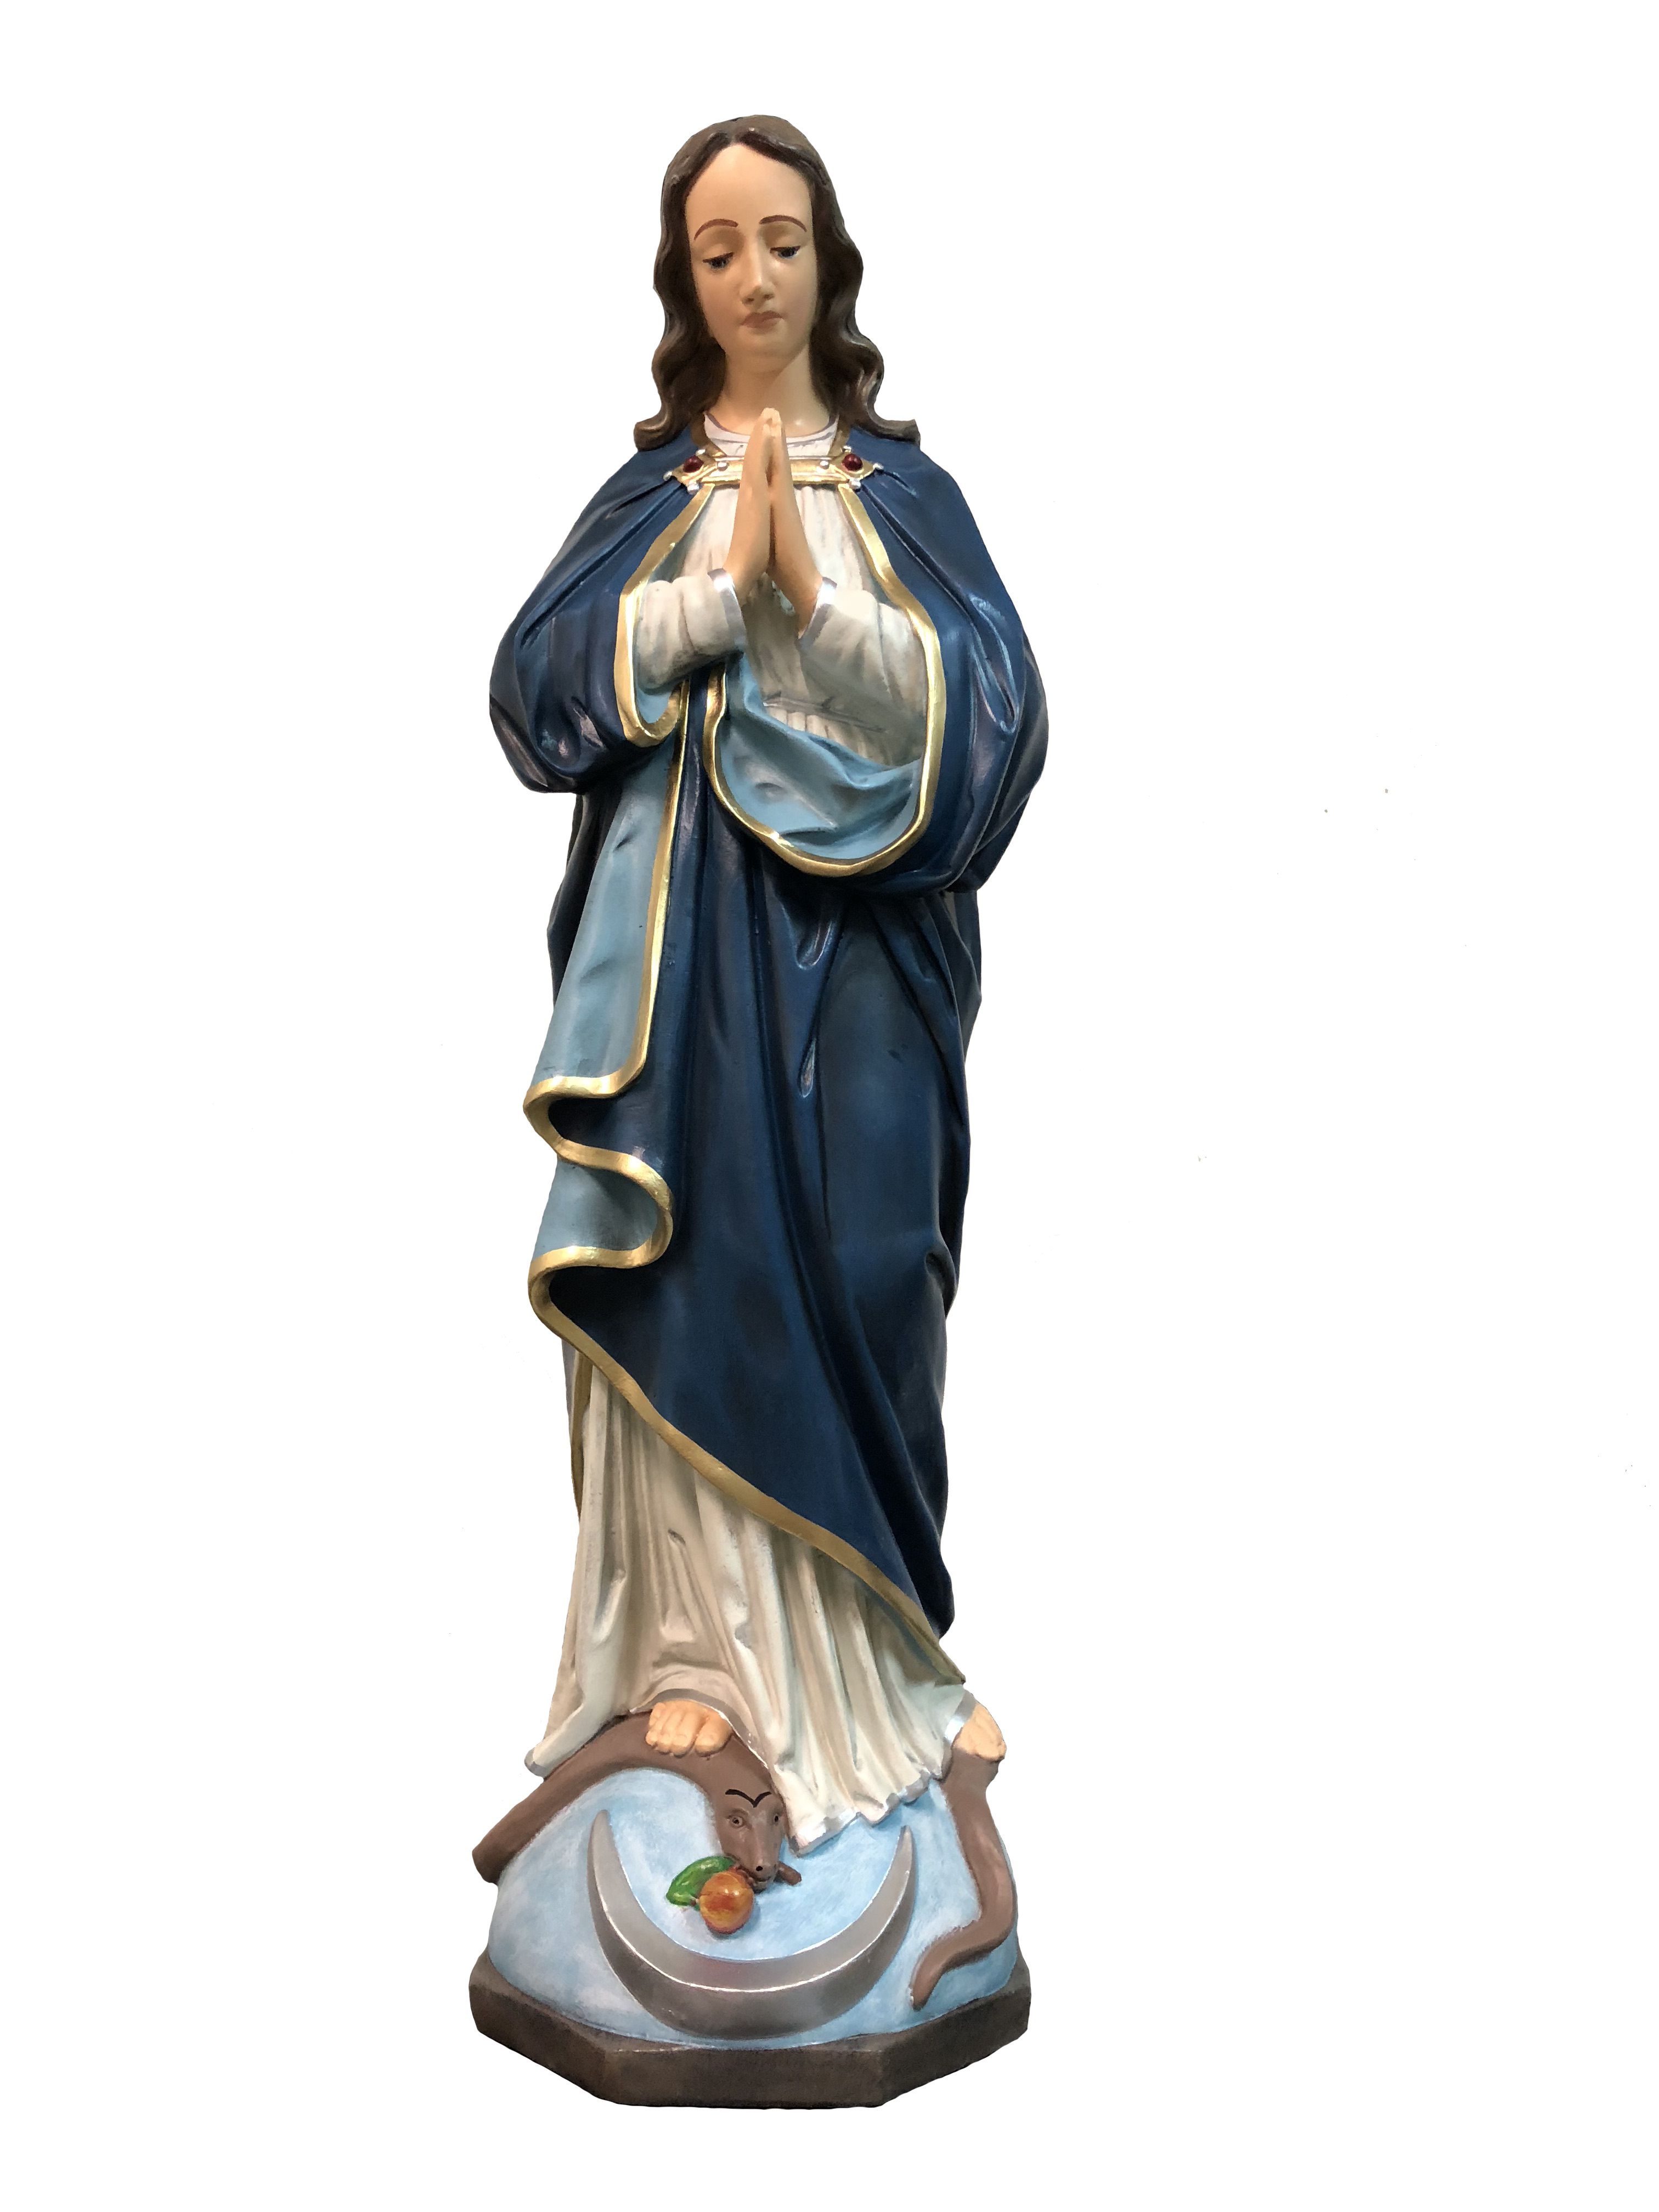 Matka Boża w modlitwie - Figura nagrobna - 63 cm - R148